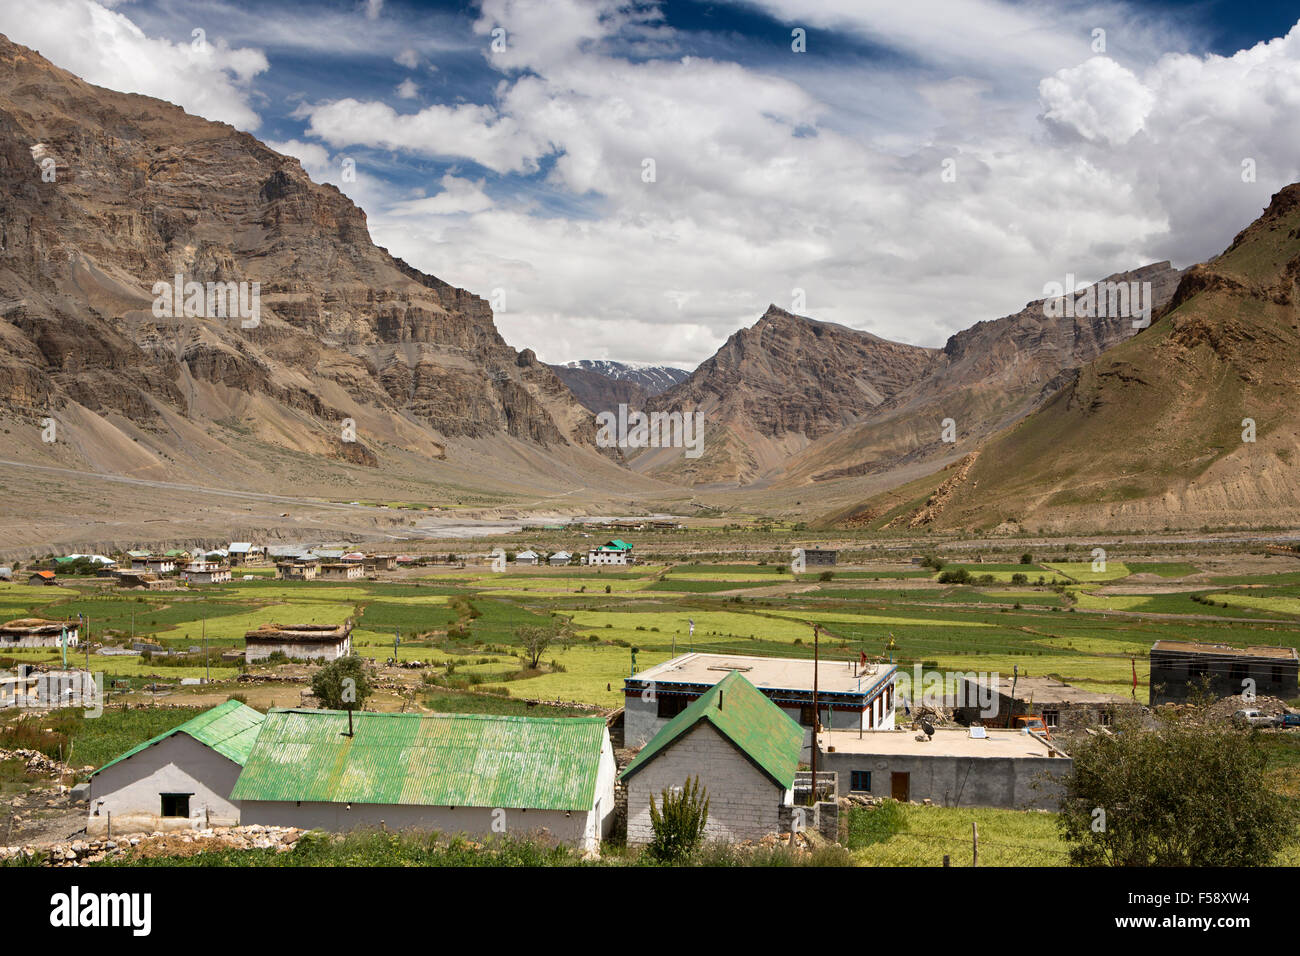 India, Himachal Pradesh, Spiti Valley, Losar village, casali di campagna tra i campi di orzo Foto Stock